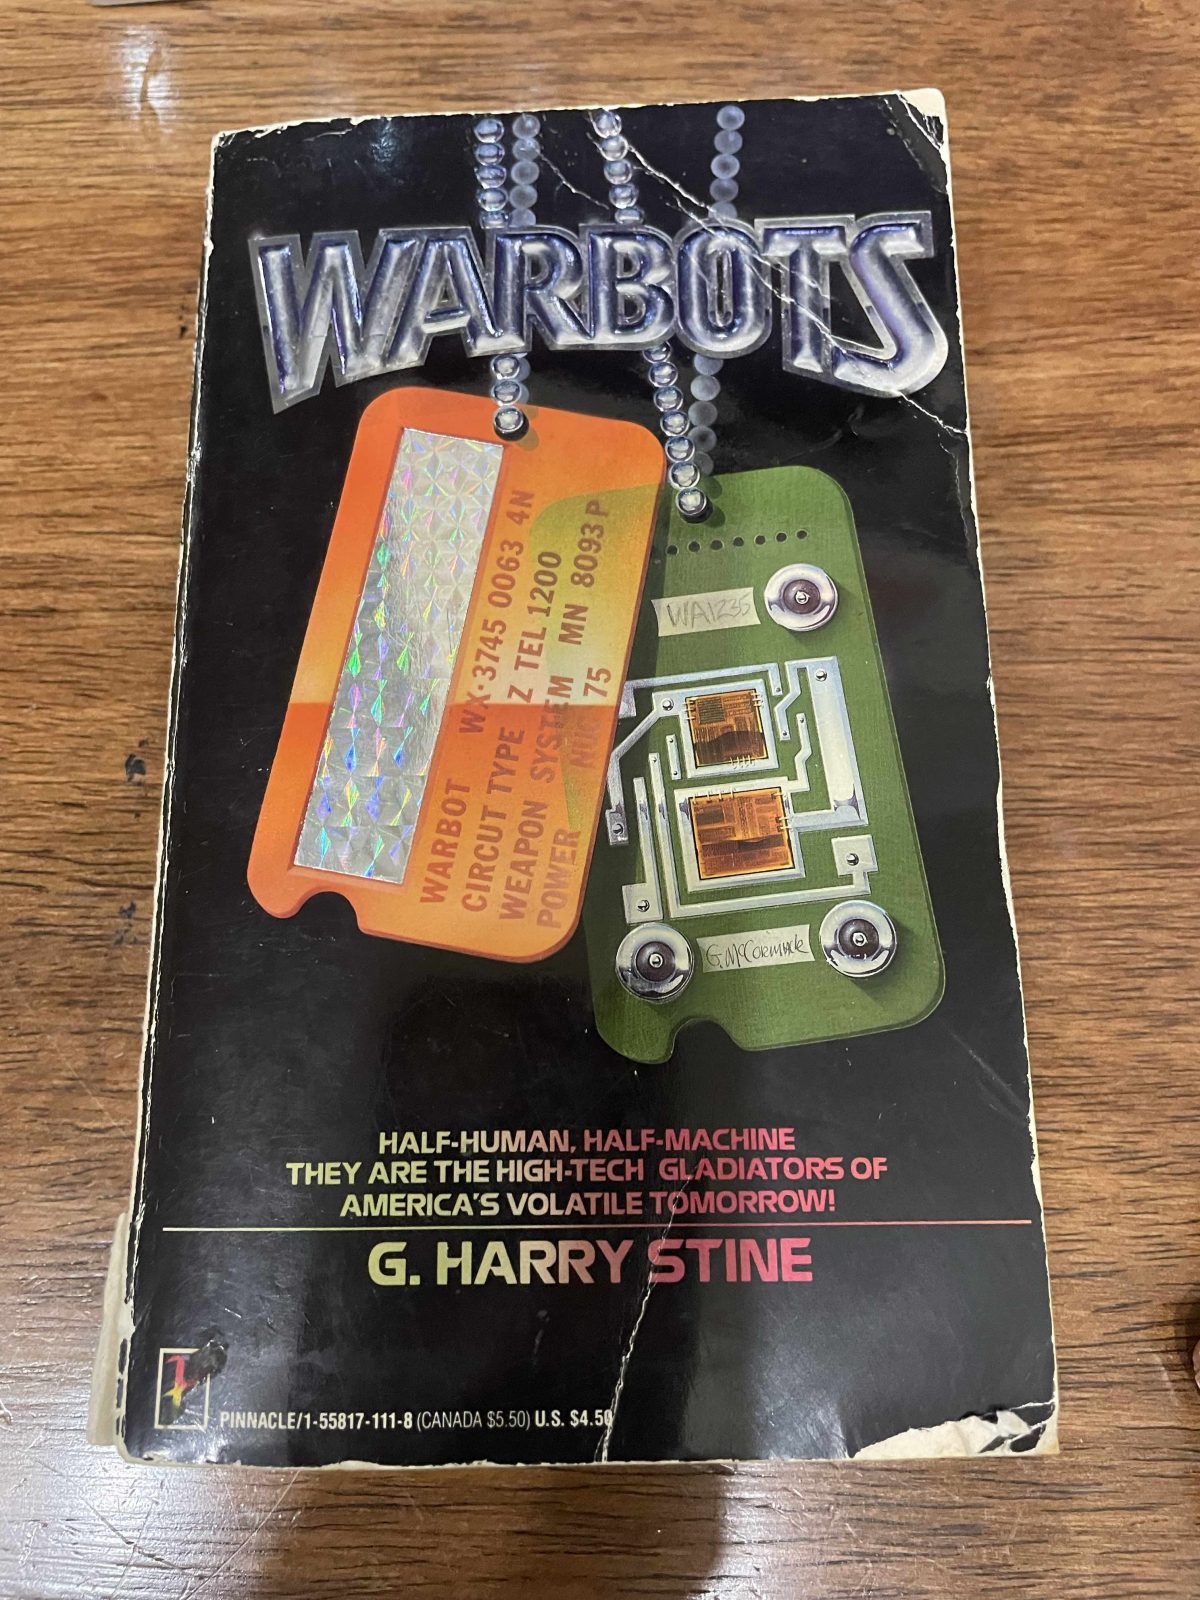 Warbots by G. Harry Stine